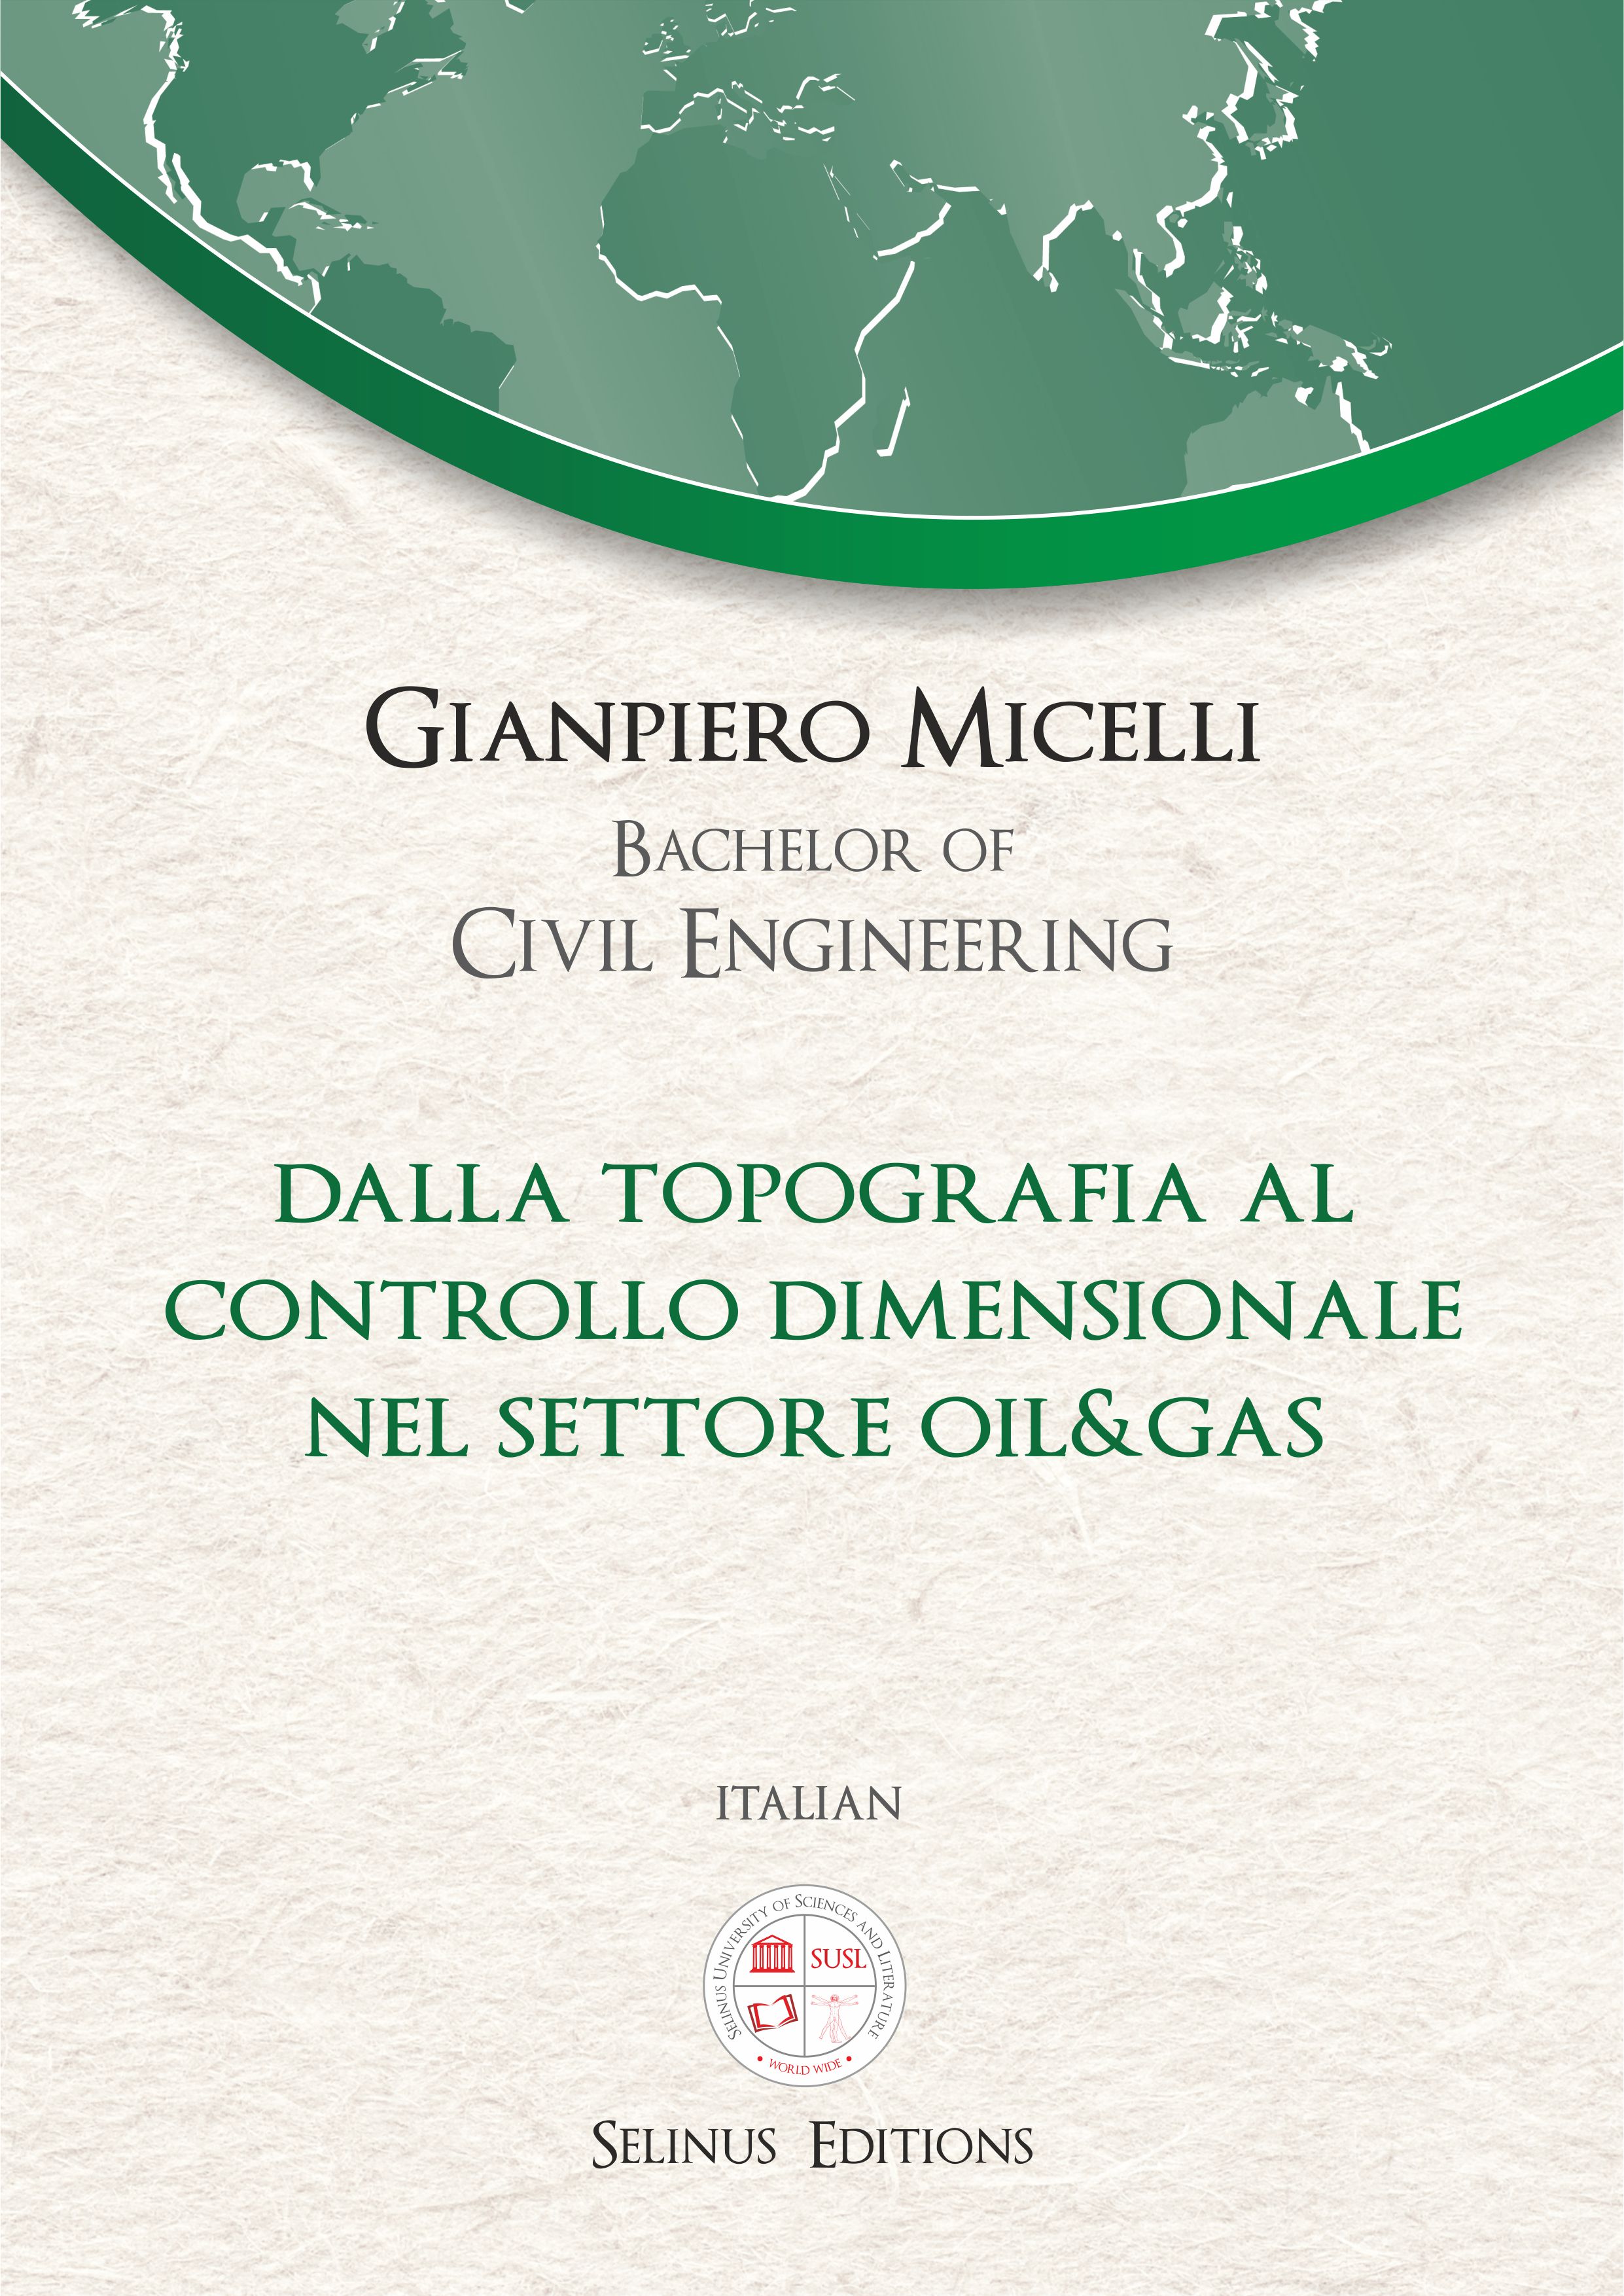 Thesis Gianpiero Micelli